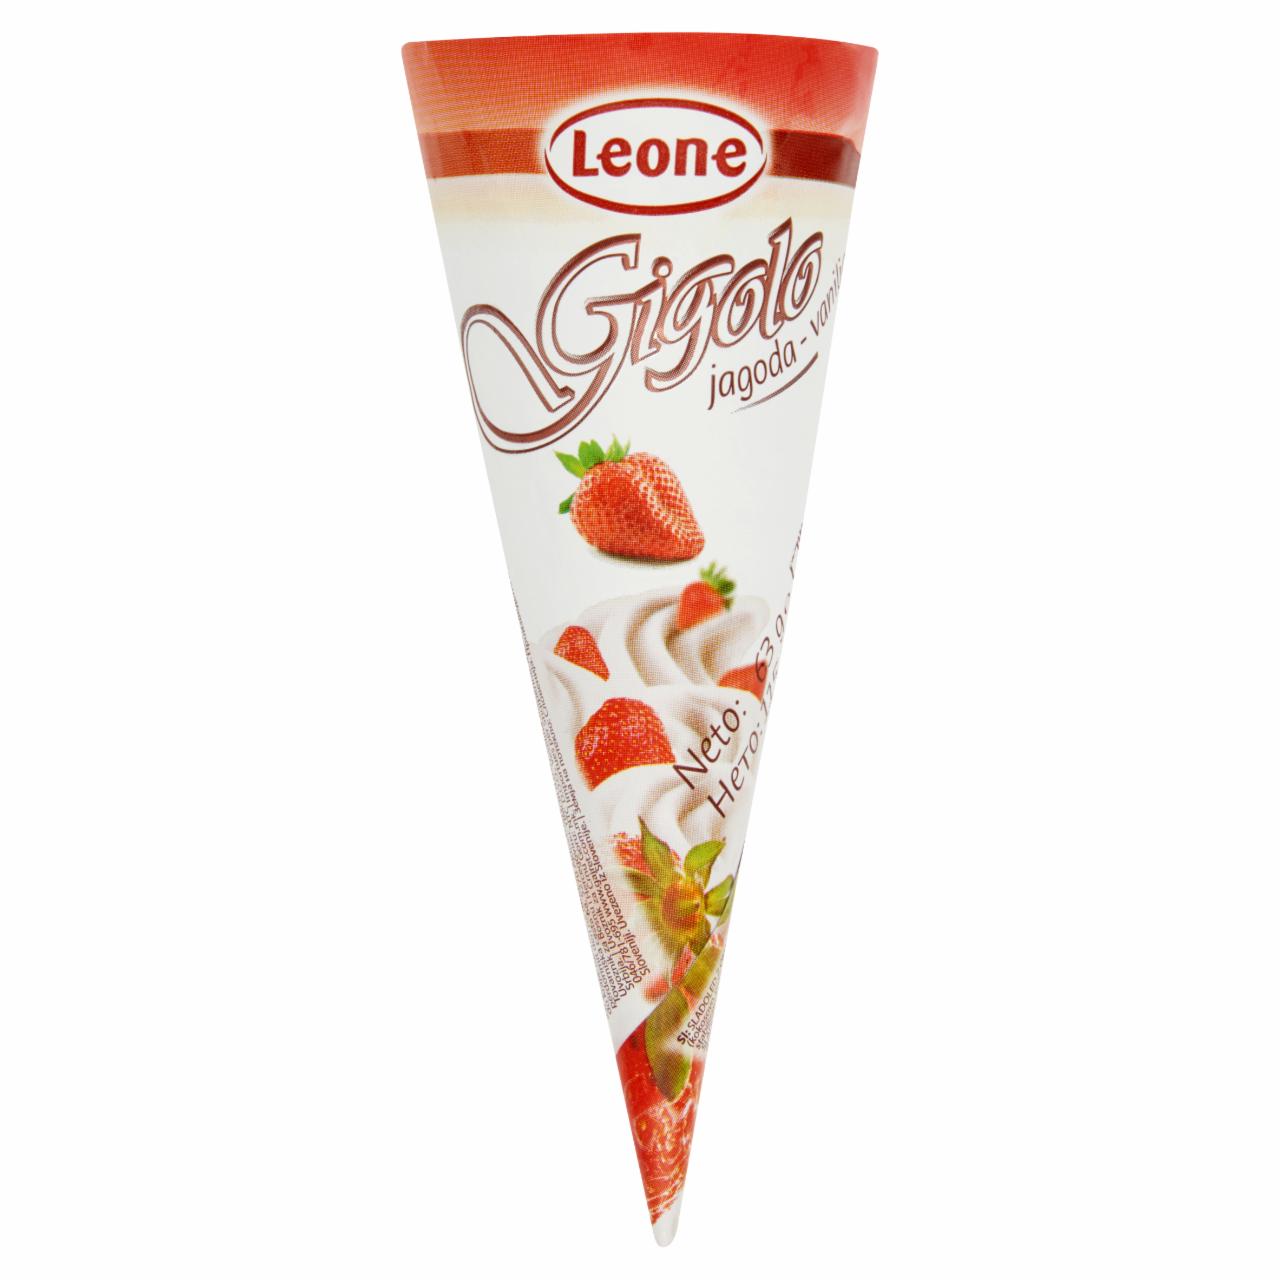 Képek - Leone Gigolo vanília & eper tölcséres jégkrém 115 ml